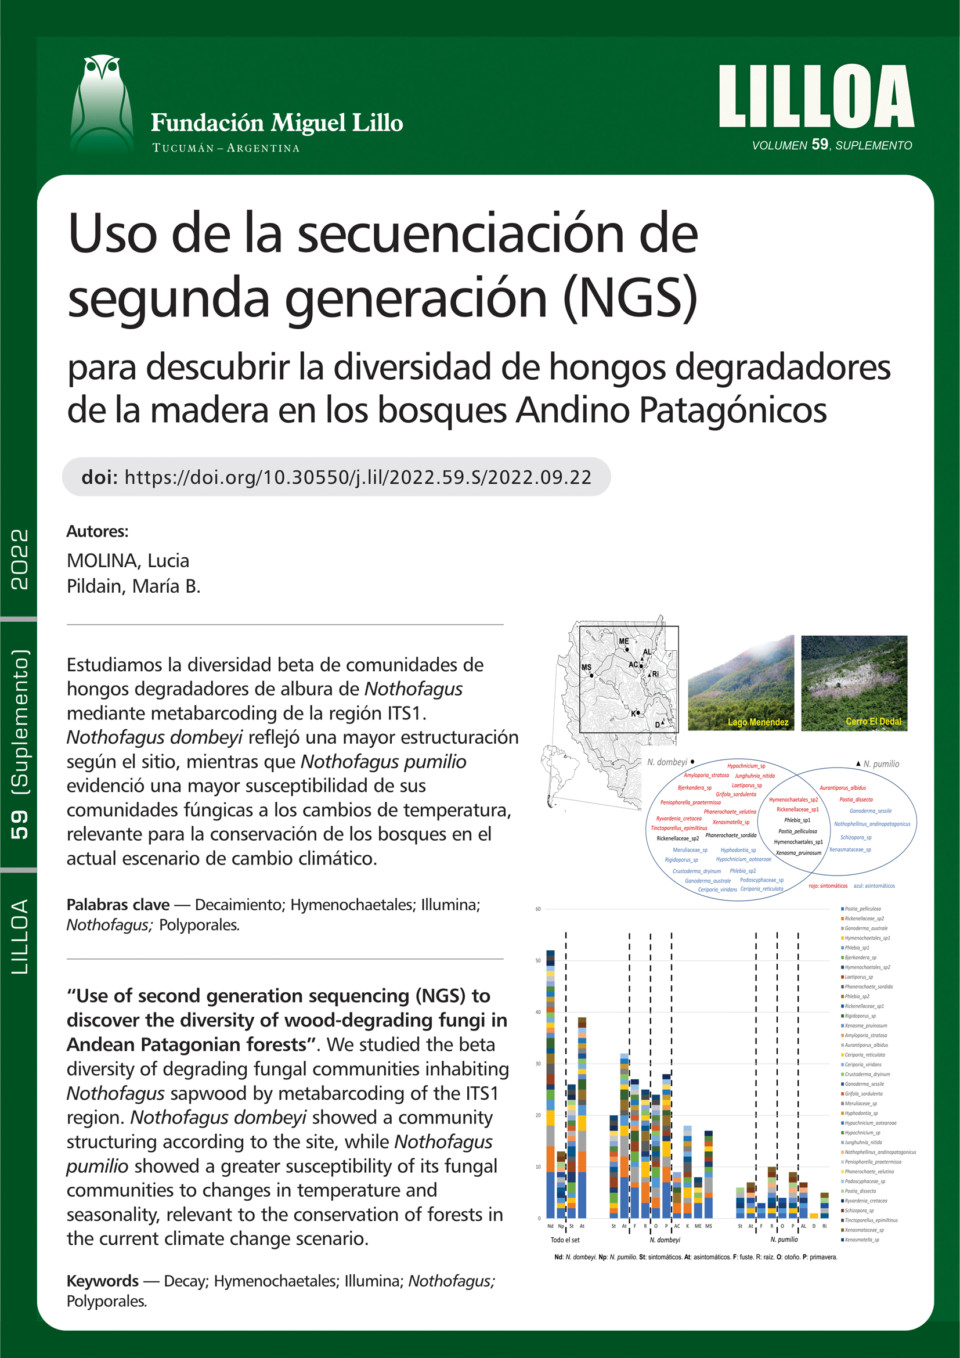 Uso de la secuenciación de segunda generación (NGS) para descubrir la diversidad de hongos degradadores de la madera en los bosques Andino Patagónicos